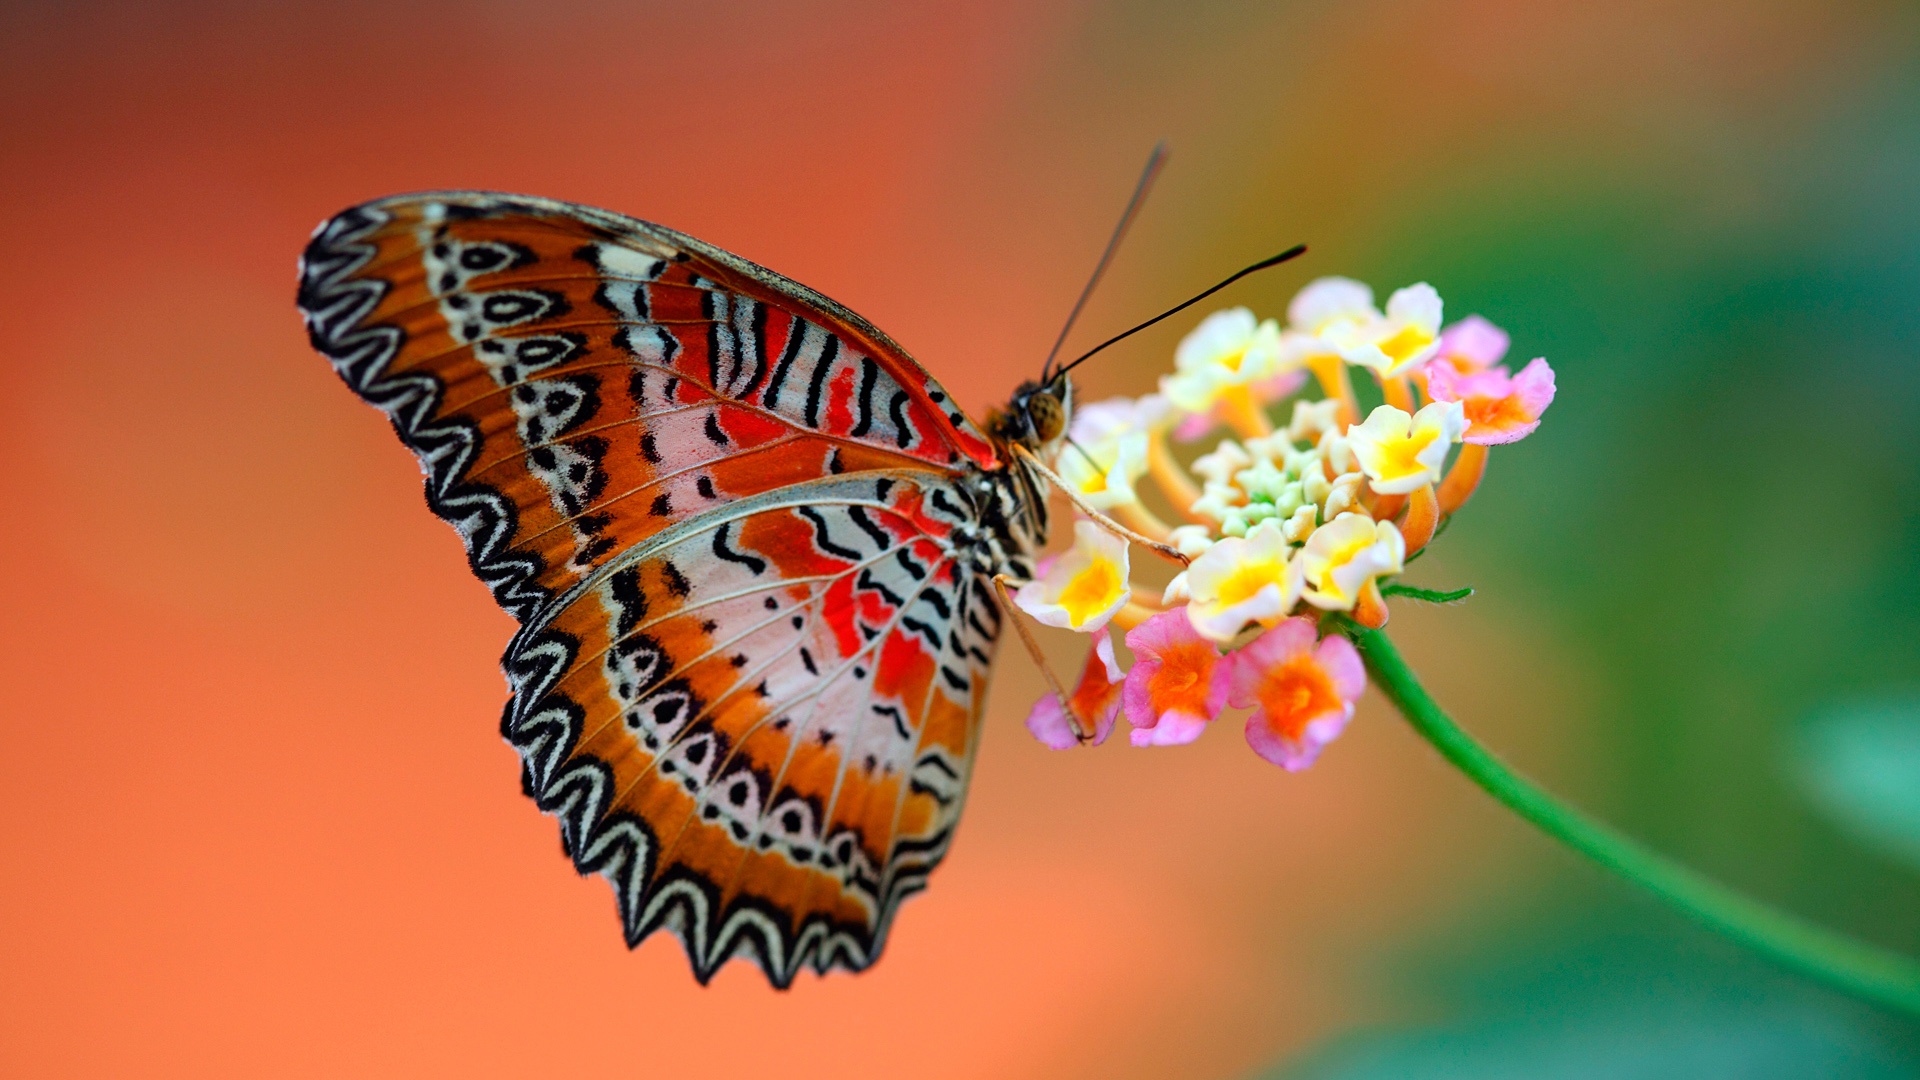 butterfly-on-flower-wallpaperz-1080.jpg